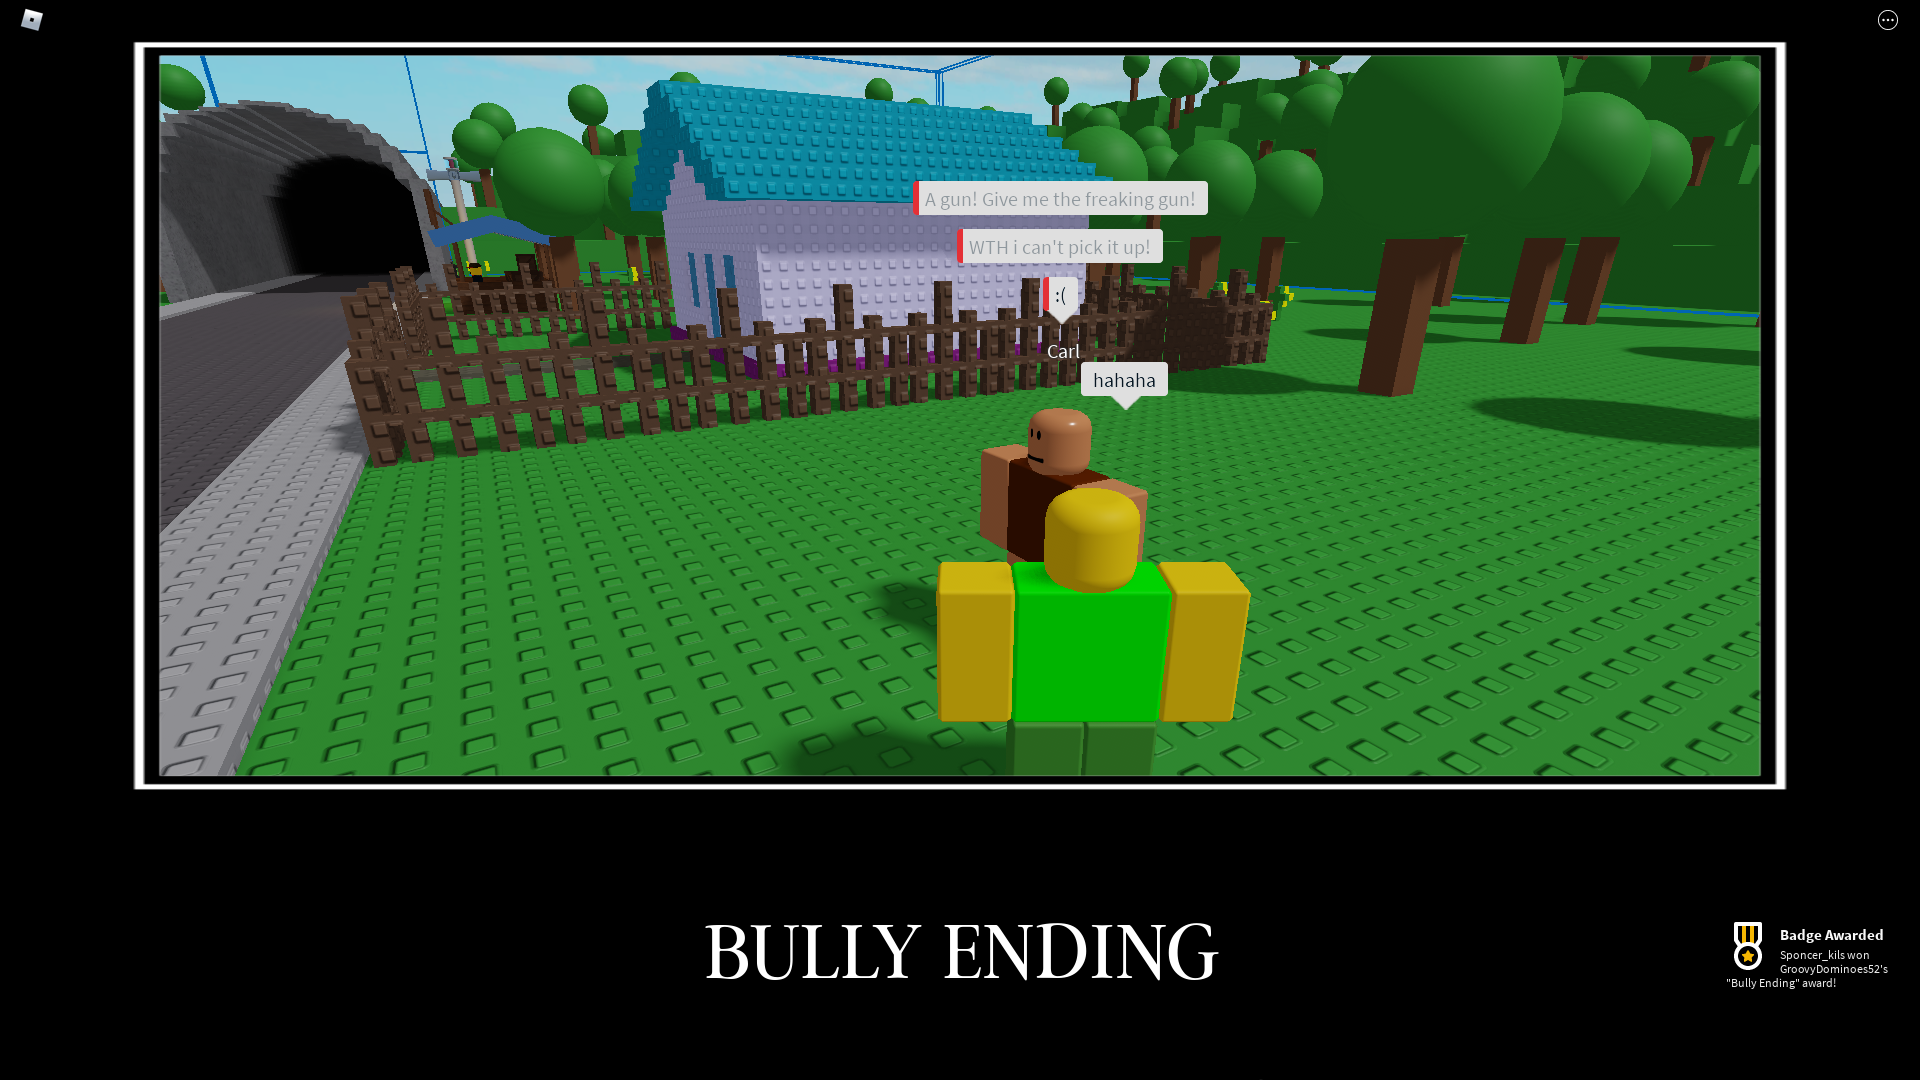 Bully Series - Speedrun